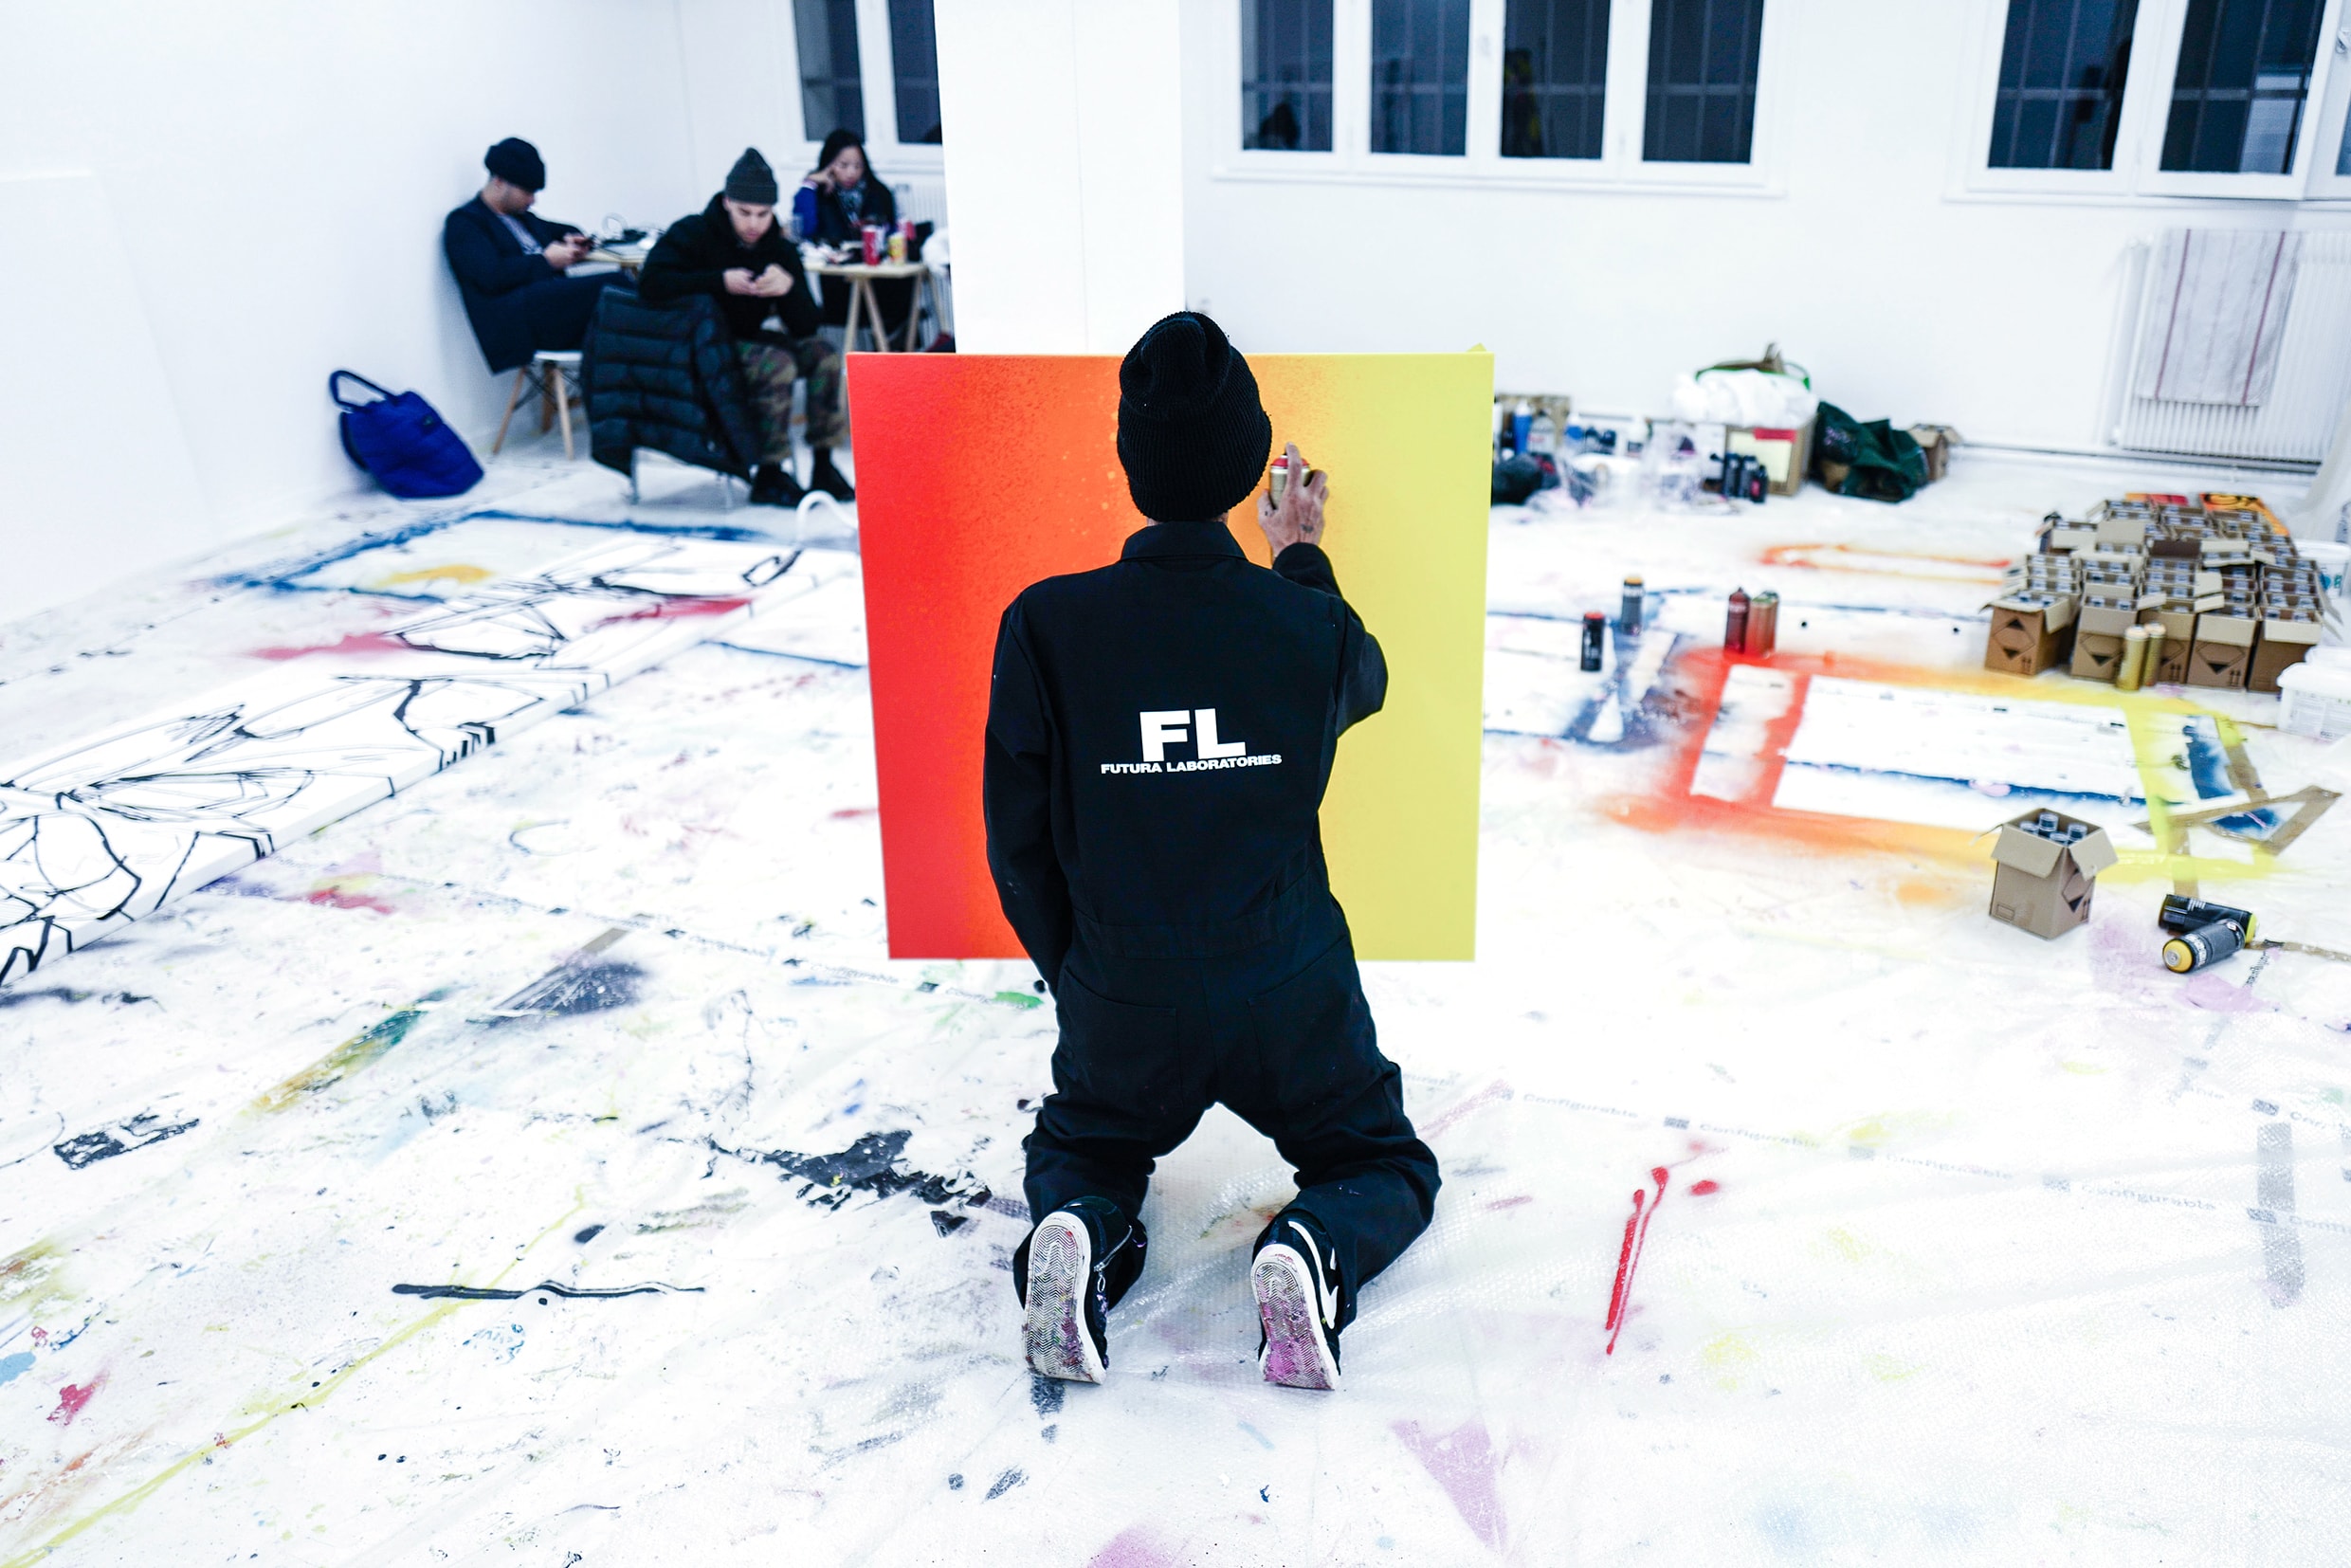 藝術三月－傳奇塗鴉藝術家 Futura 將來港開設《Abstract Compass》展覽